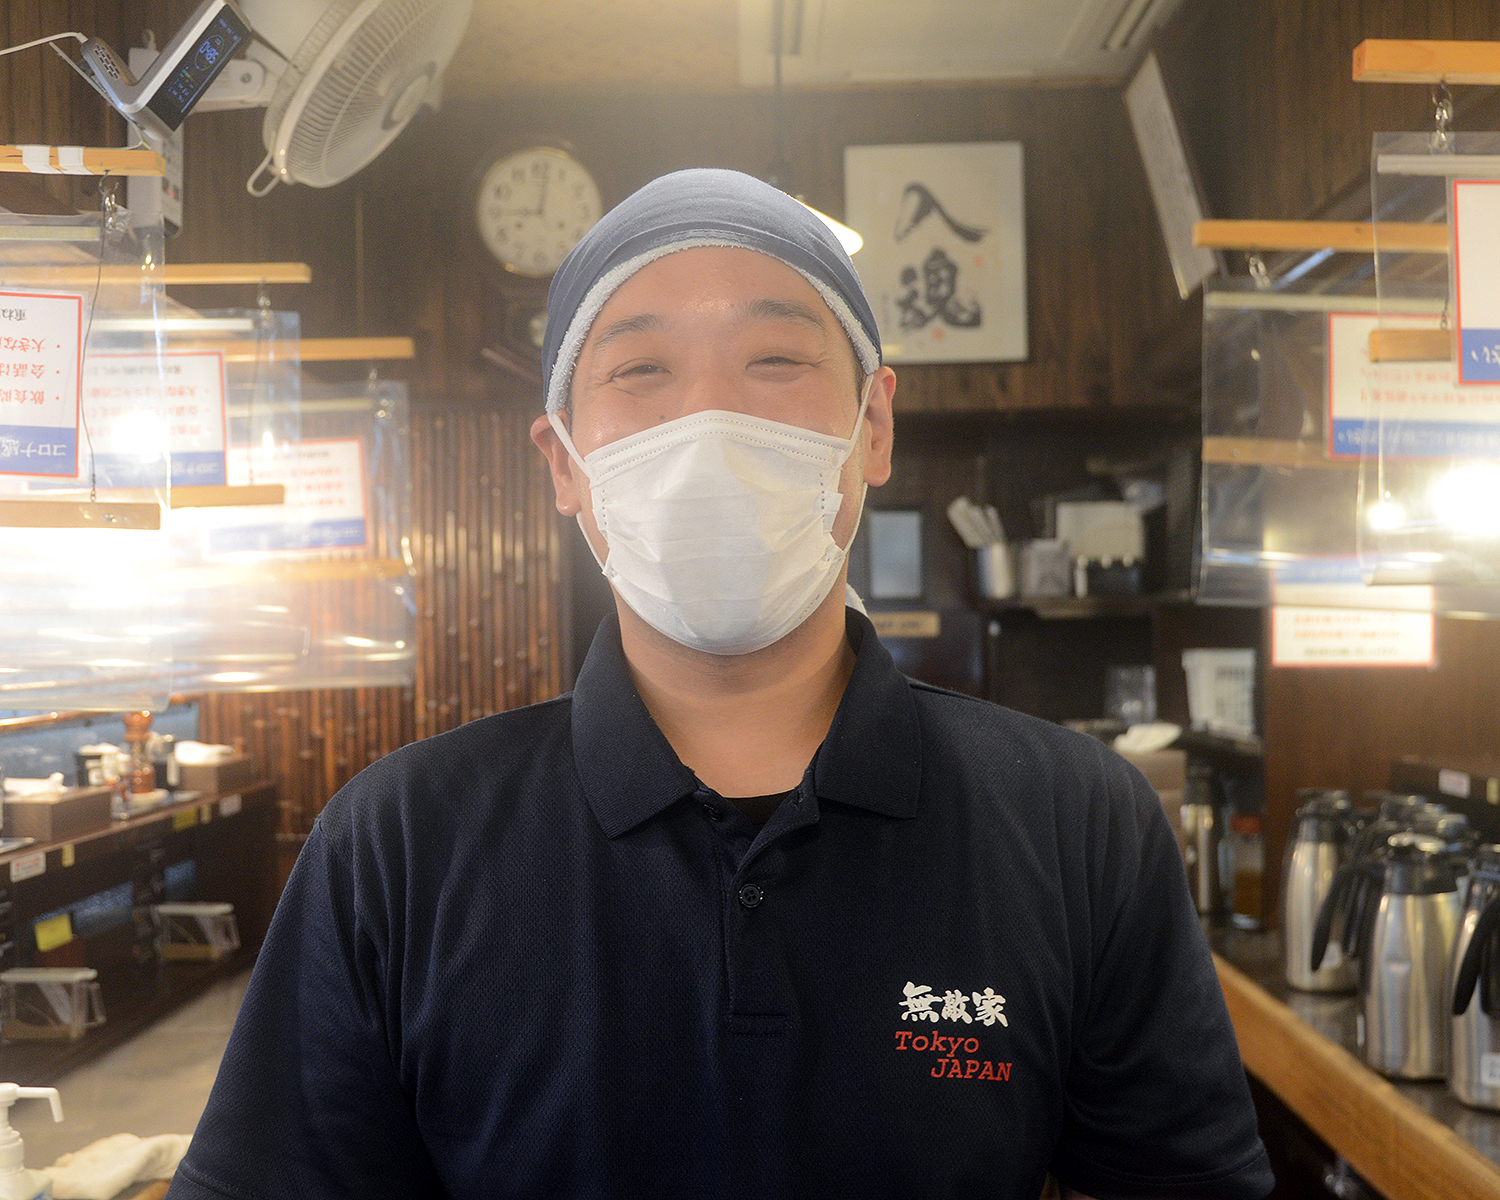 お話を伺った平川晃さん。お店を切り盛りすると同時に、店舗運営マネージャーとしても活躍している。